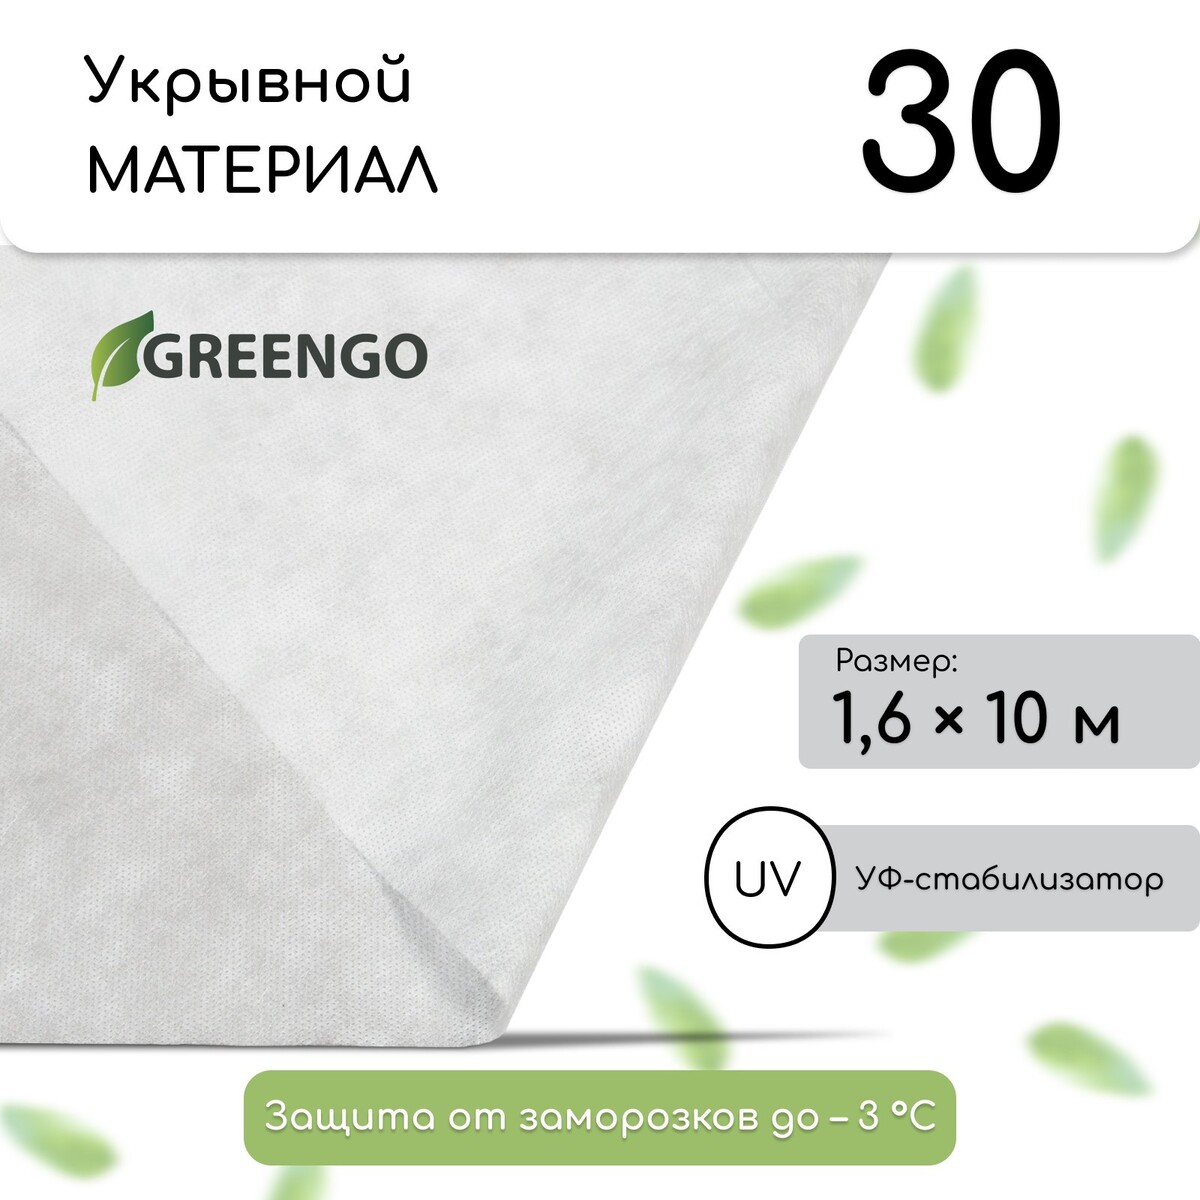 Материал укрывной, 10 × 1.6 м, плотность 30 г/м², спанбонд с уф-стабилизатором, белый, greengo, эконом 30%